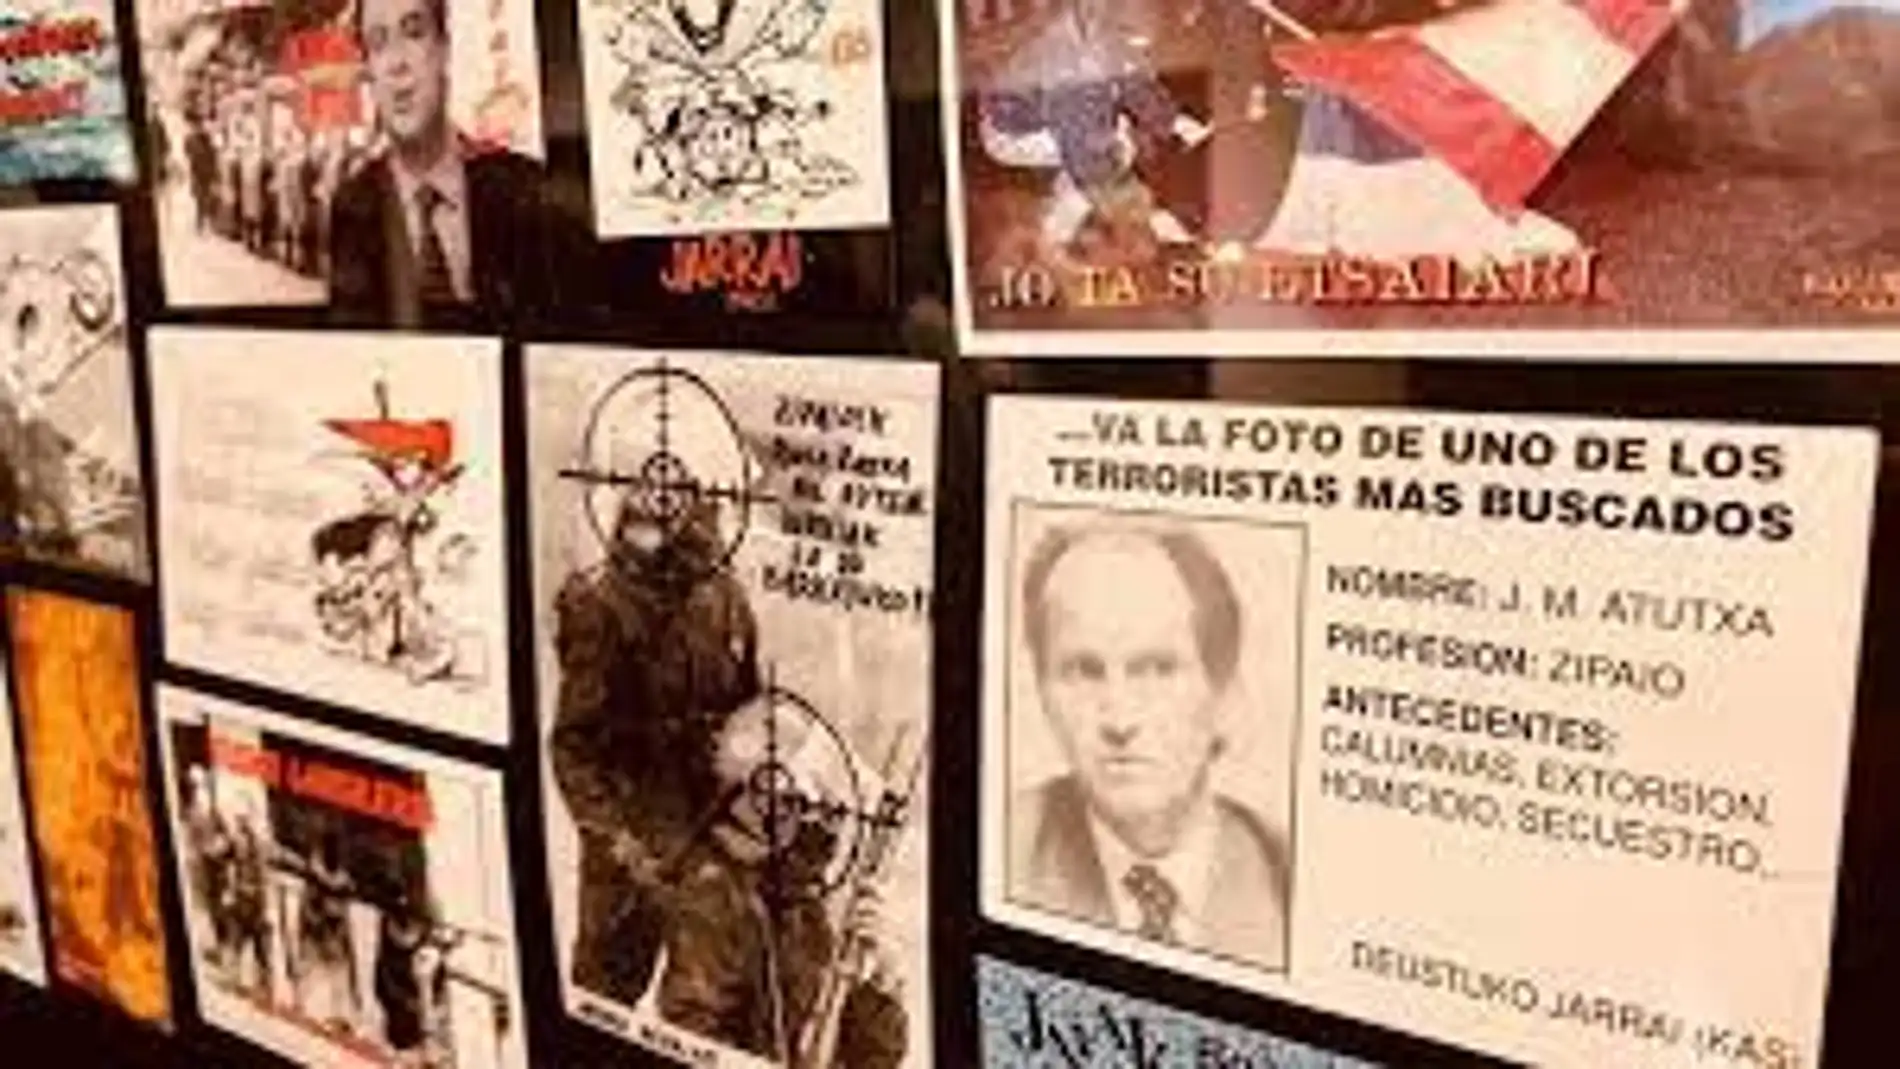 Portugalete expone 600 "pegatinas del odio" propagado por diferentes grupos radicales